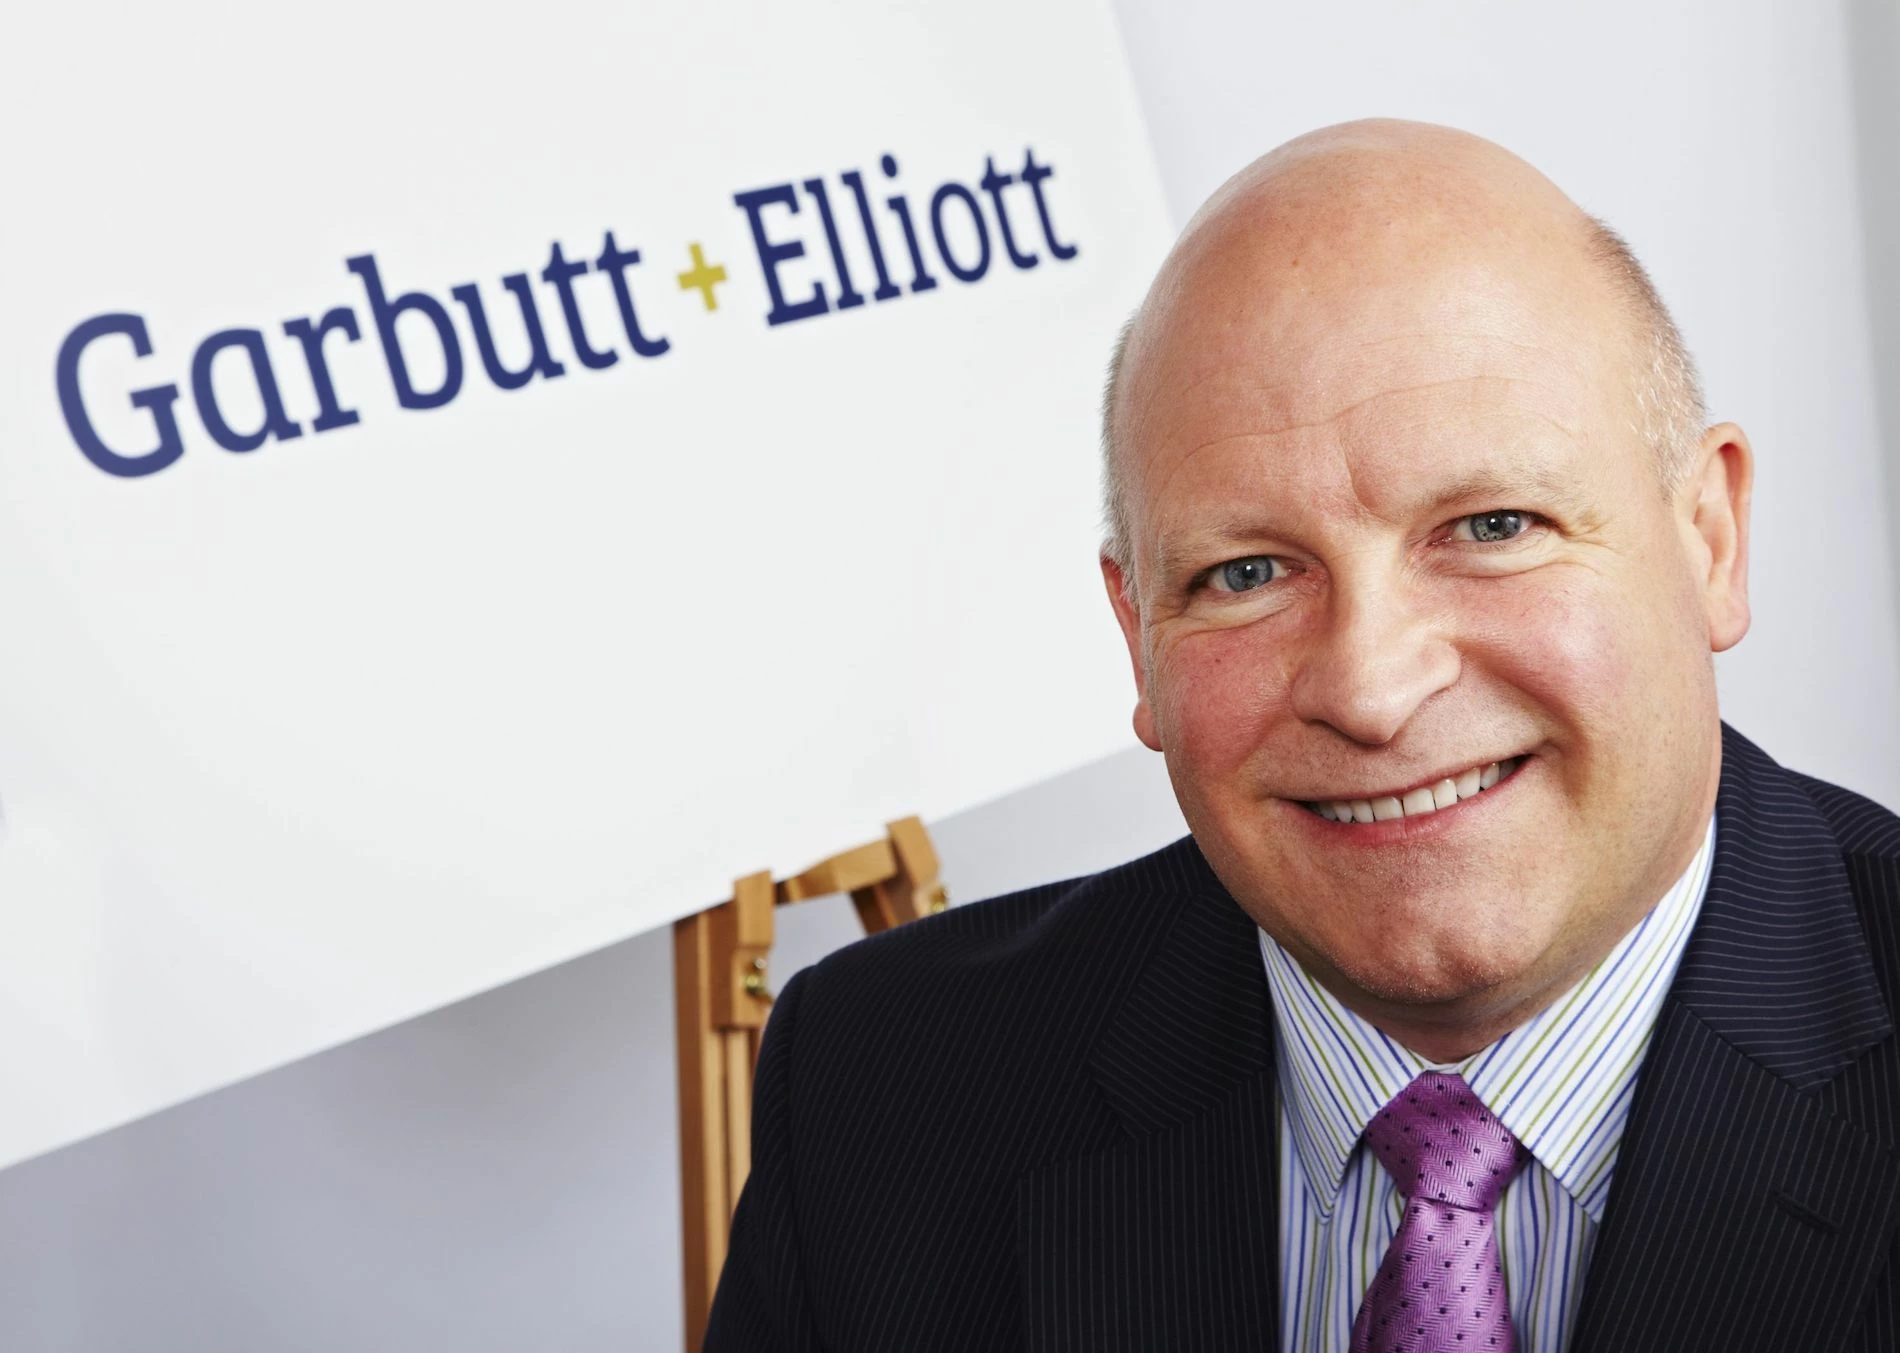  Garbutt + Elliott managing partner Russell Turner.